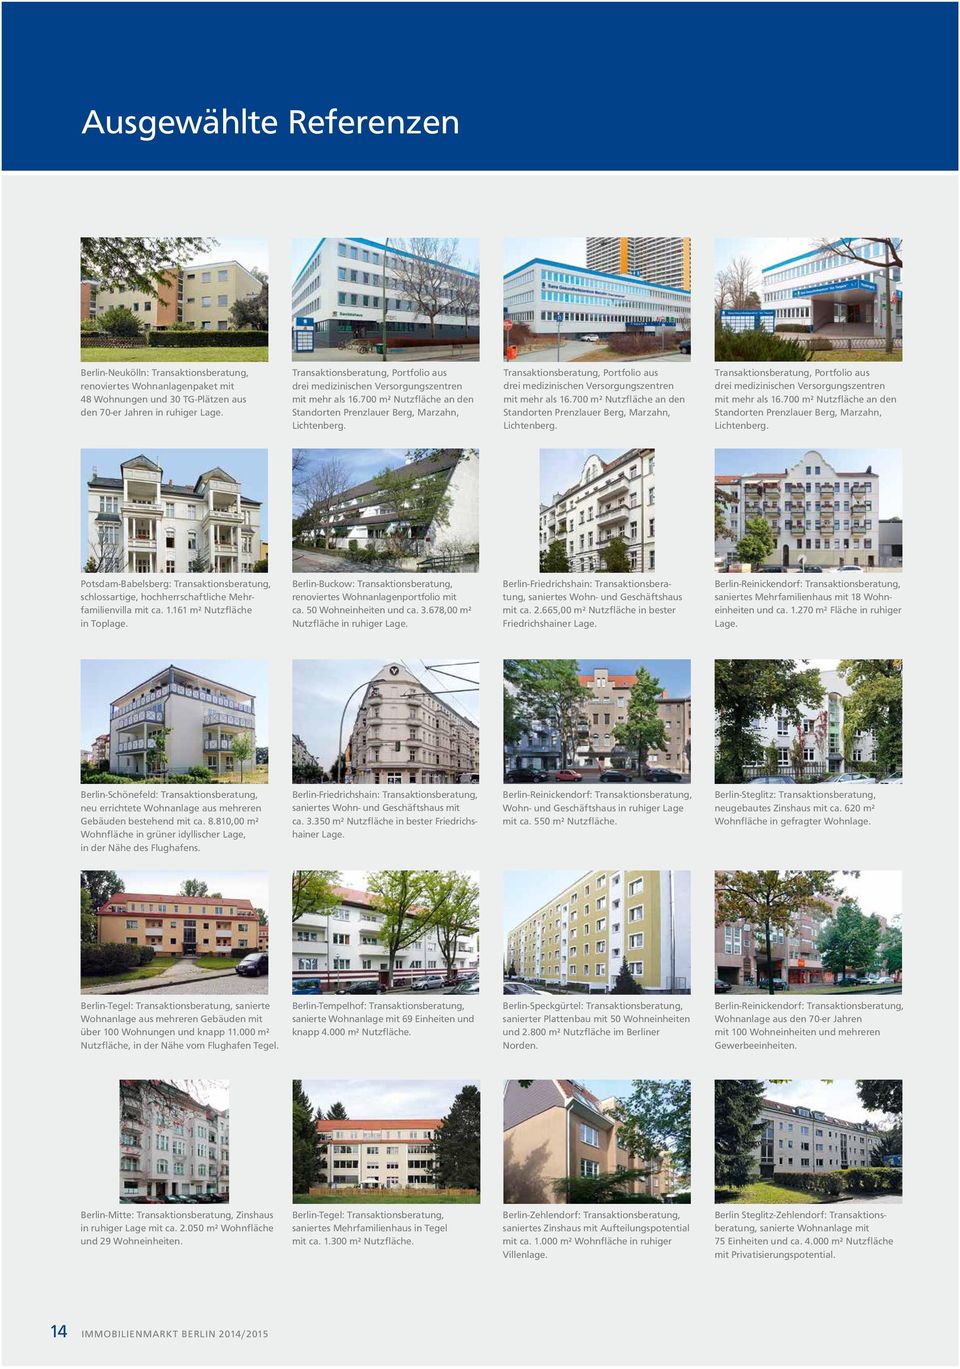 Potsdam-Babelsberg: Transaktionsberatung, schlossartige, hochherrschaftliche Mehrfamilienvilla mit ca. 1.161 m² Nutz fläche in Toplage.